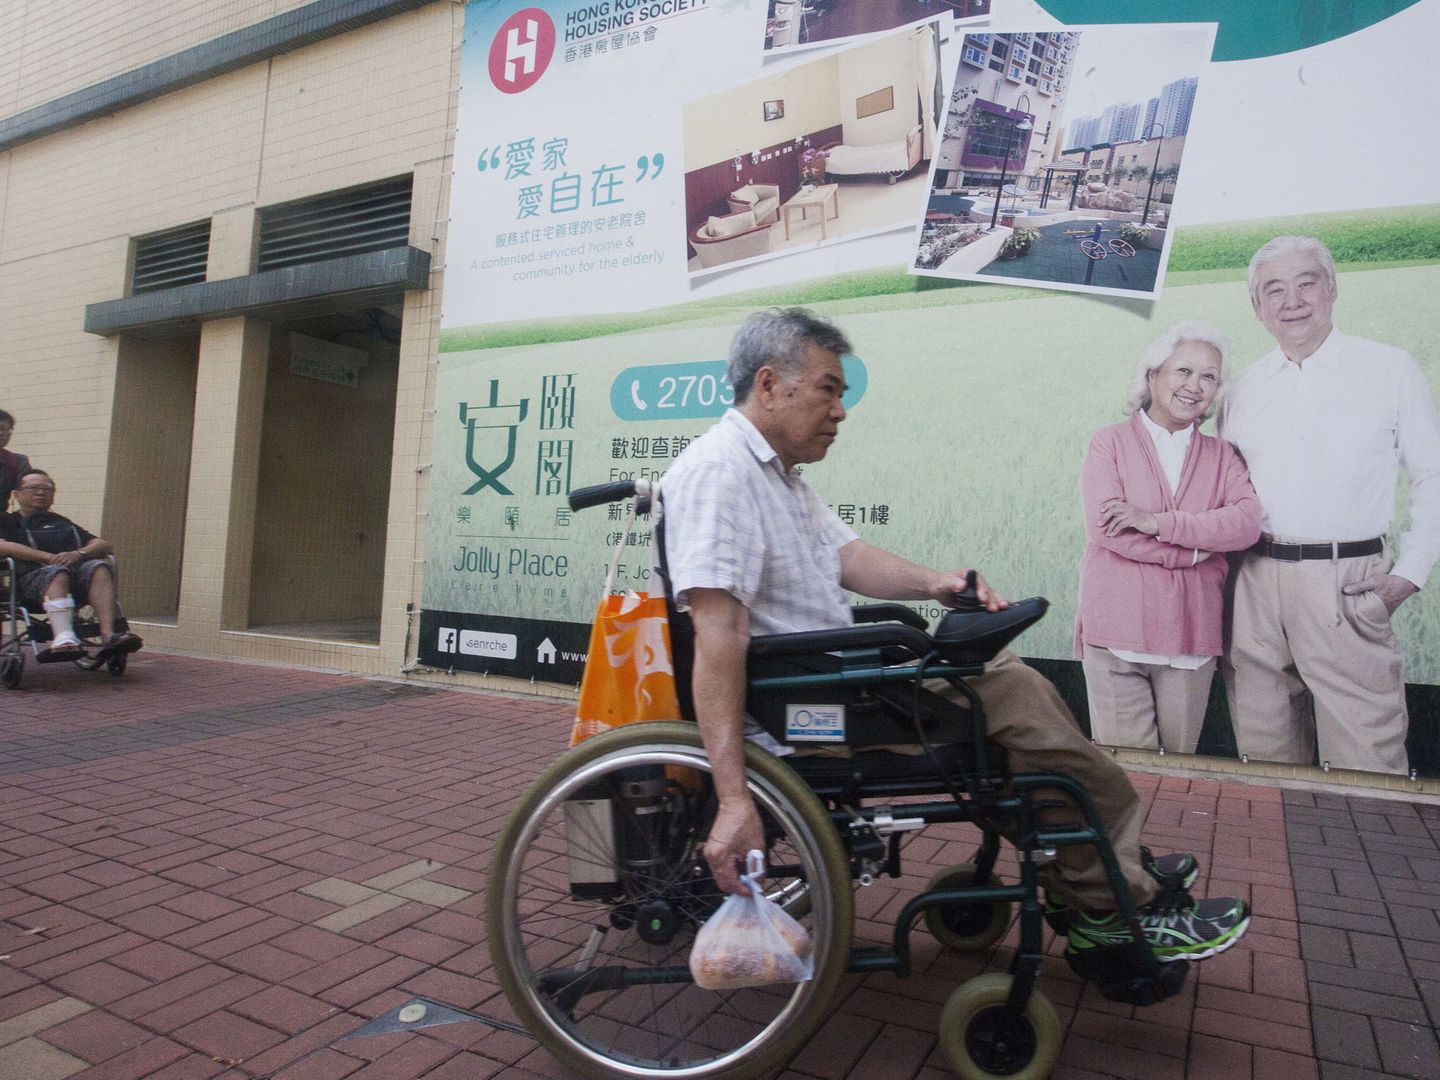 Una residencia de ancianos en Tseung Kwan O, Hong Kong. (EFE)